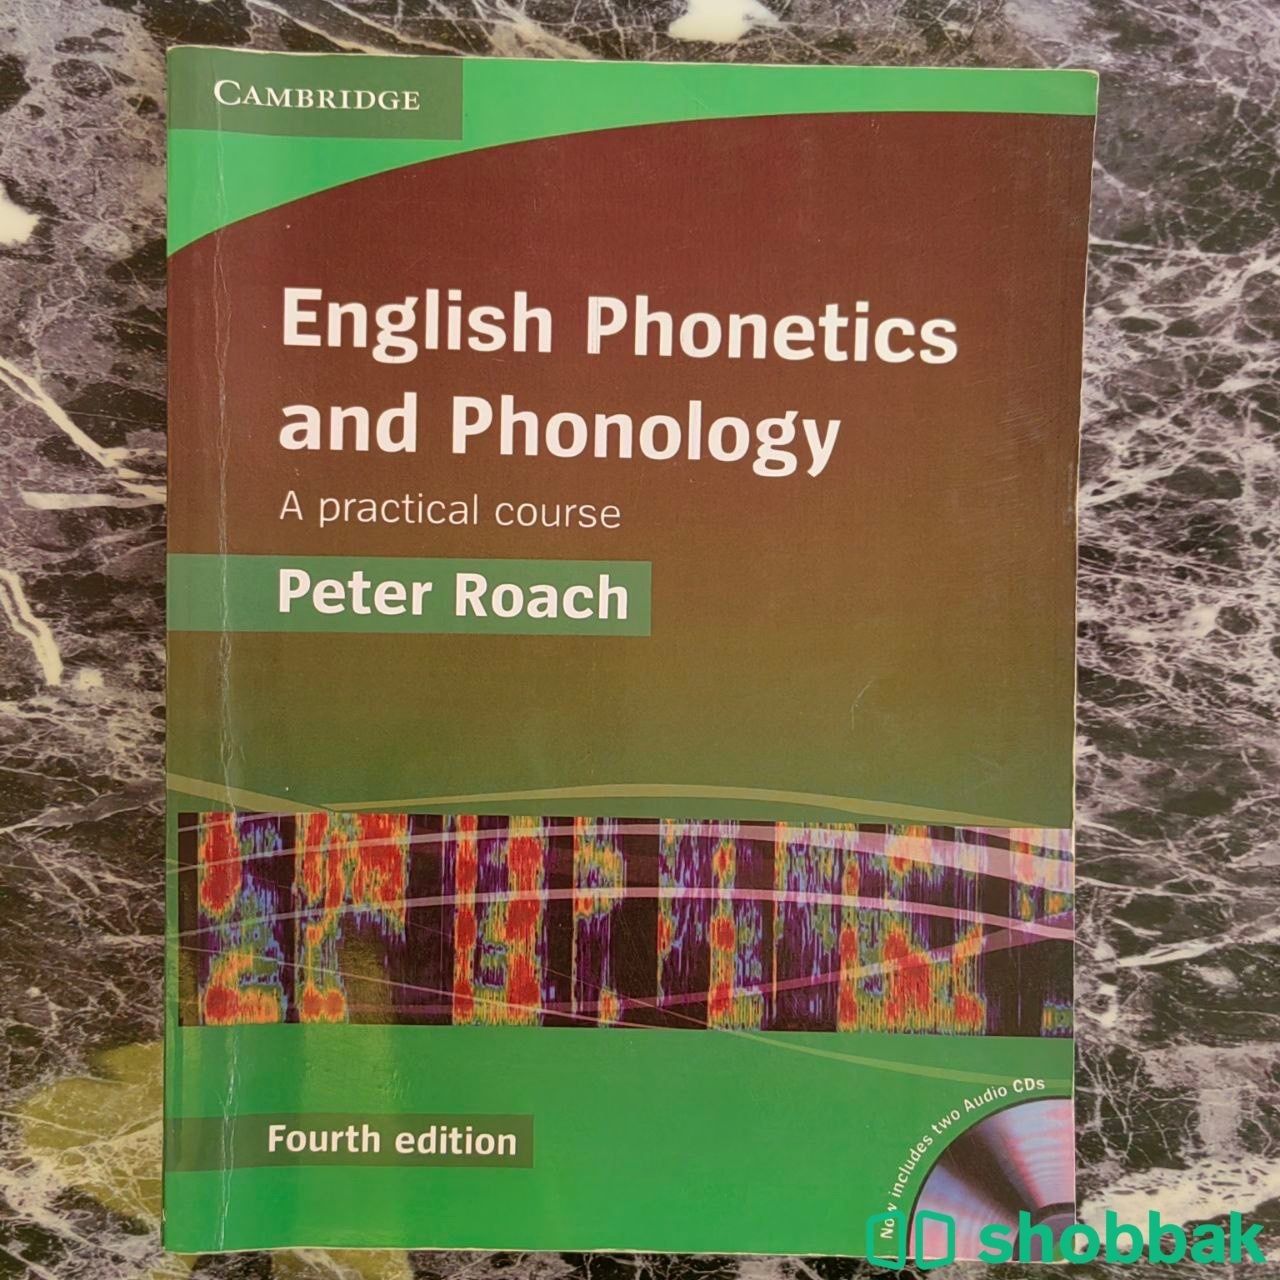 كتاب مقرر علم الصوتيات English phonetics & phonology بأقل الأسعار للطلاب Shobbak Saudi Arabia